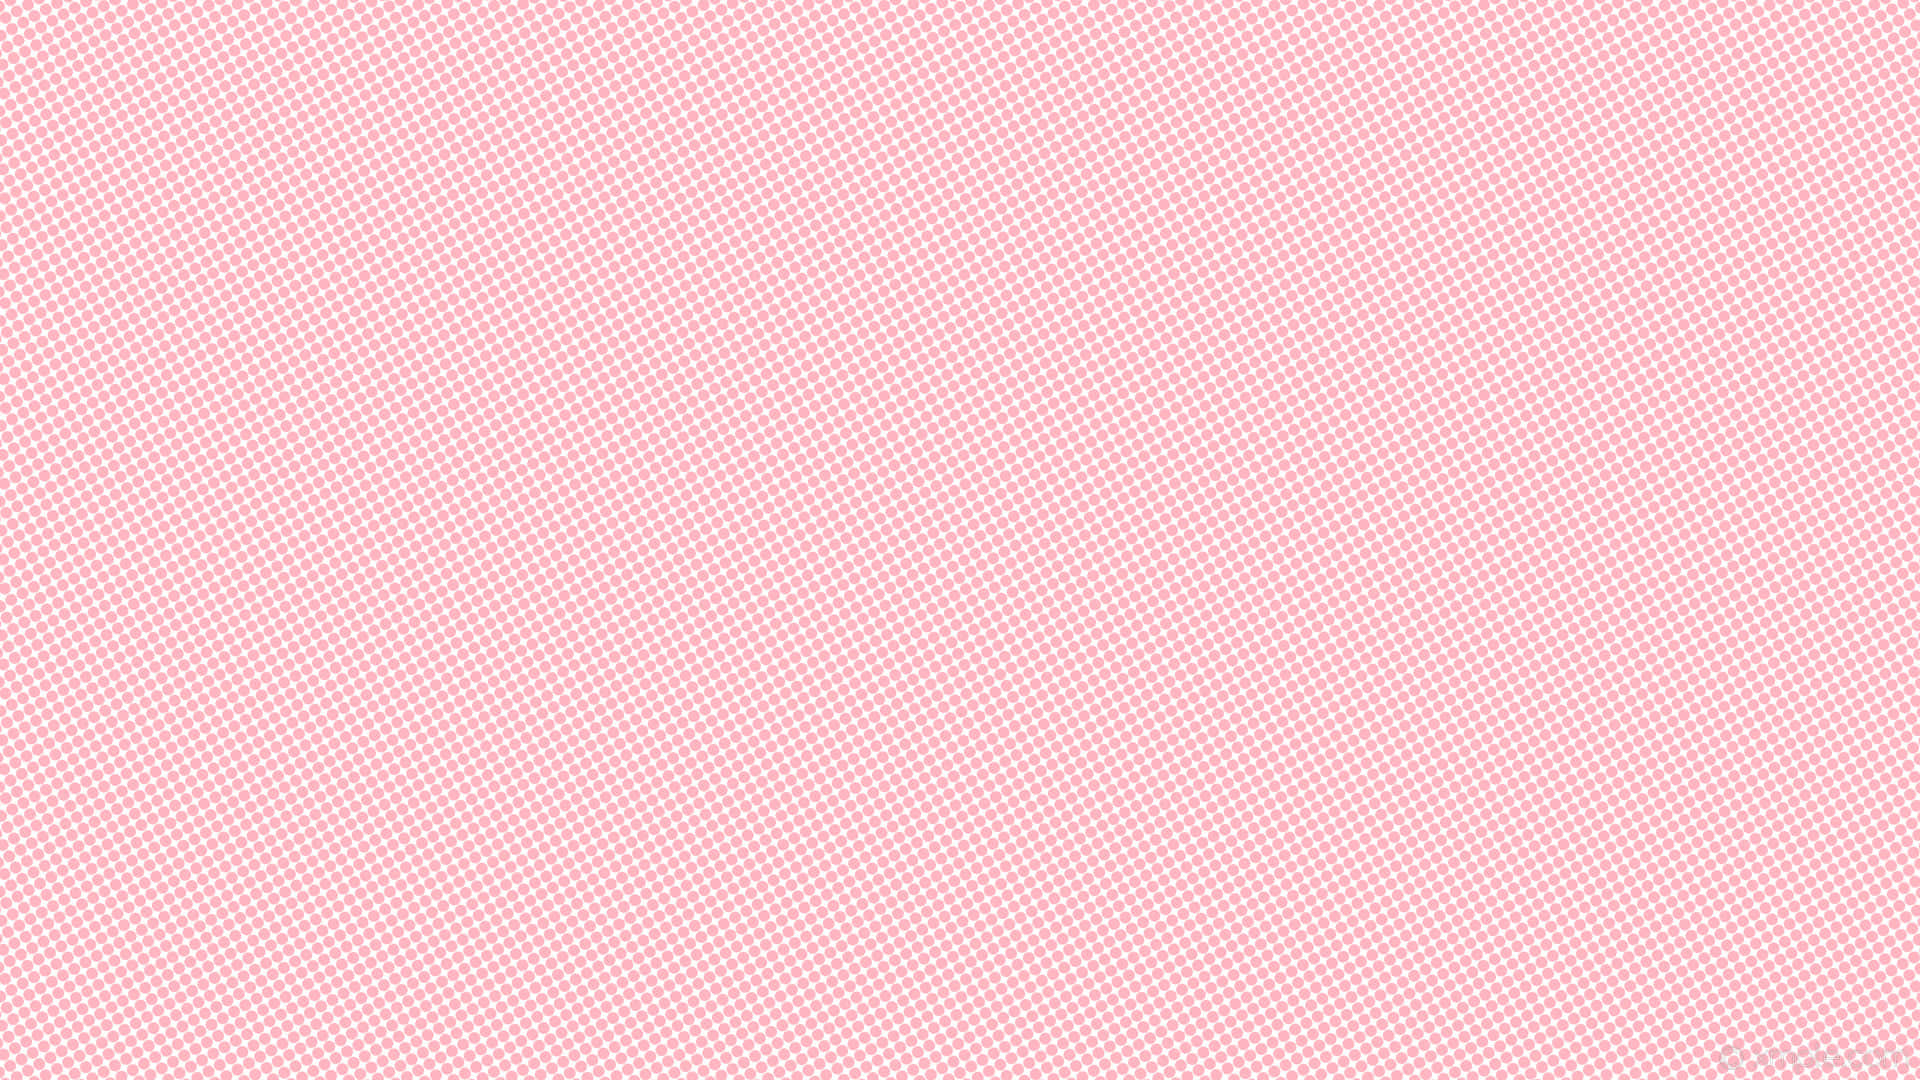 Bạn đang cần một phông nền màu hồng đơn sắc để tạo nét độc đáo cho thiết kế của mình? Chúng tôi cung cấp miễn phí ảnh nền màu hồng đơn sắc chất lượng cao để bạn dễ dàng thực hiện ý tưởng của mình. Nhấn vào hình ảnh để tải xuống ngay!